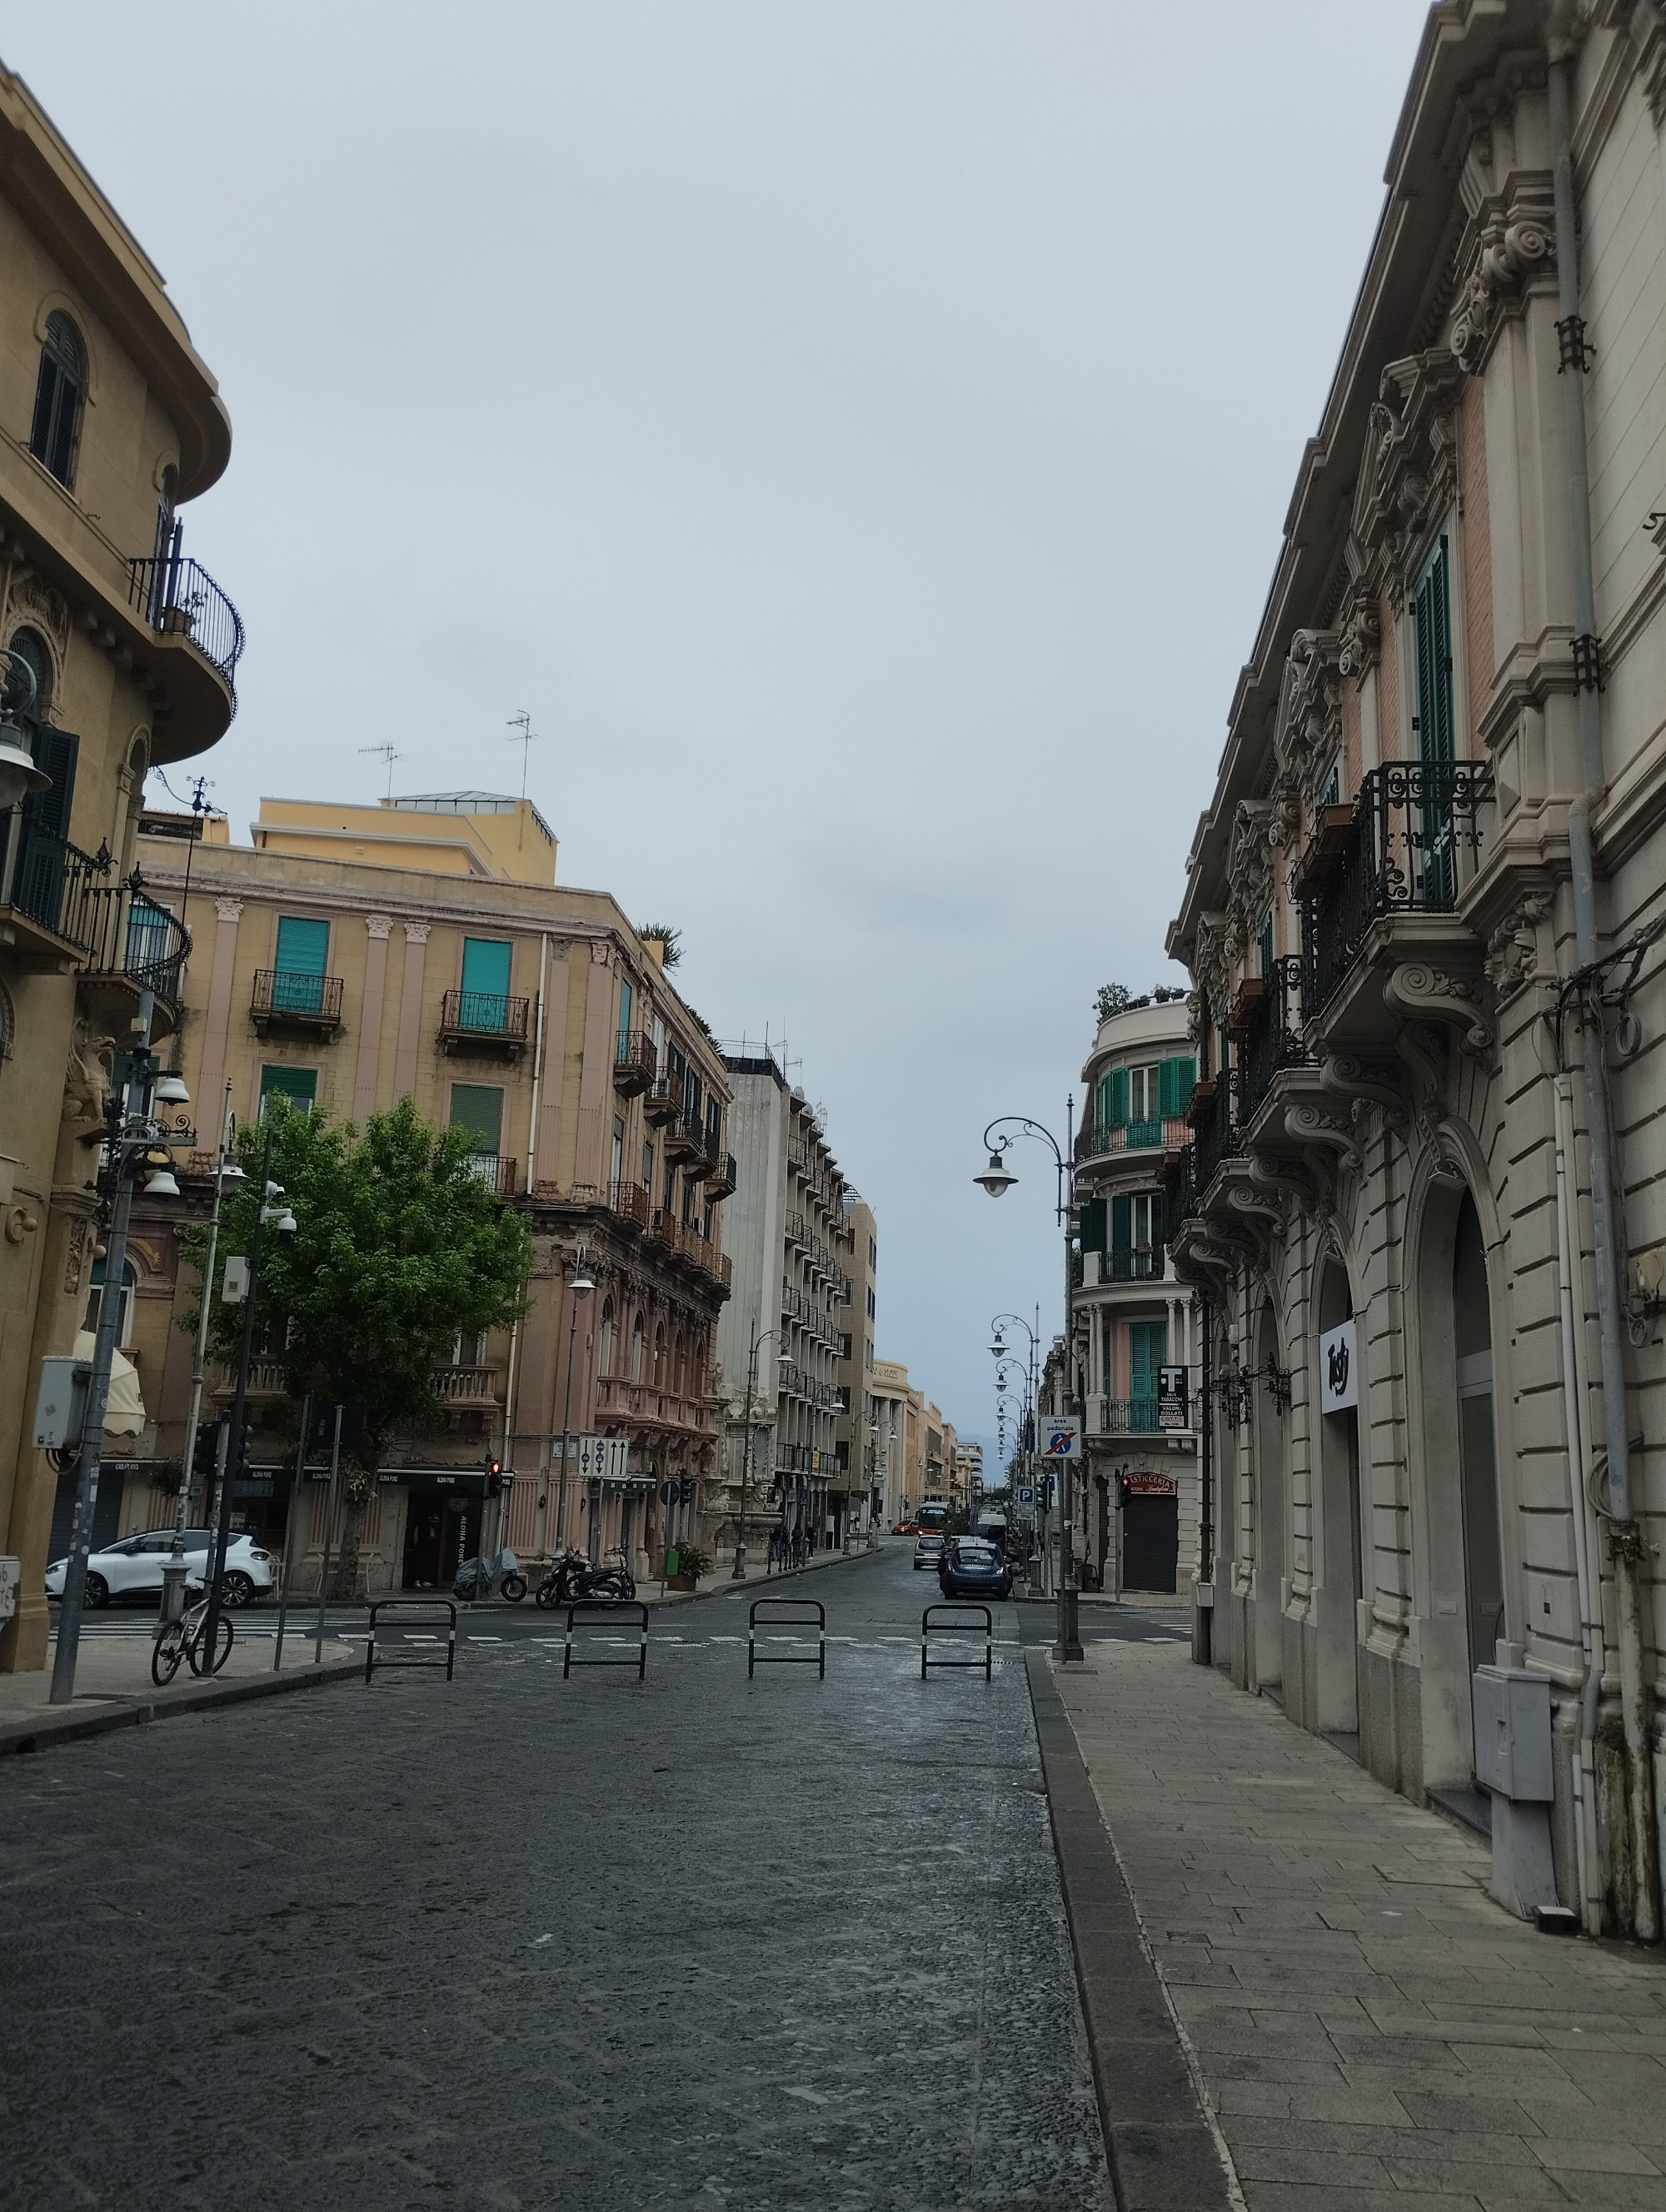 Messina, Italy